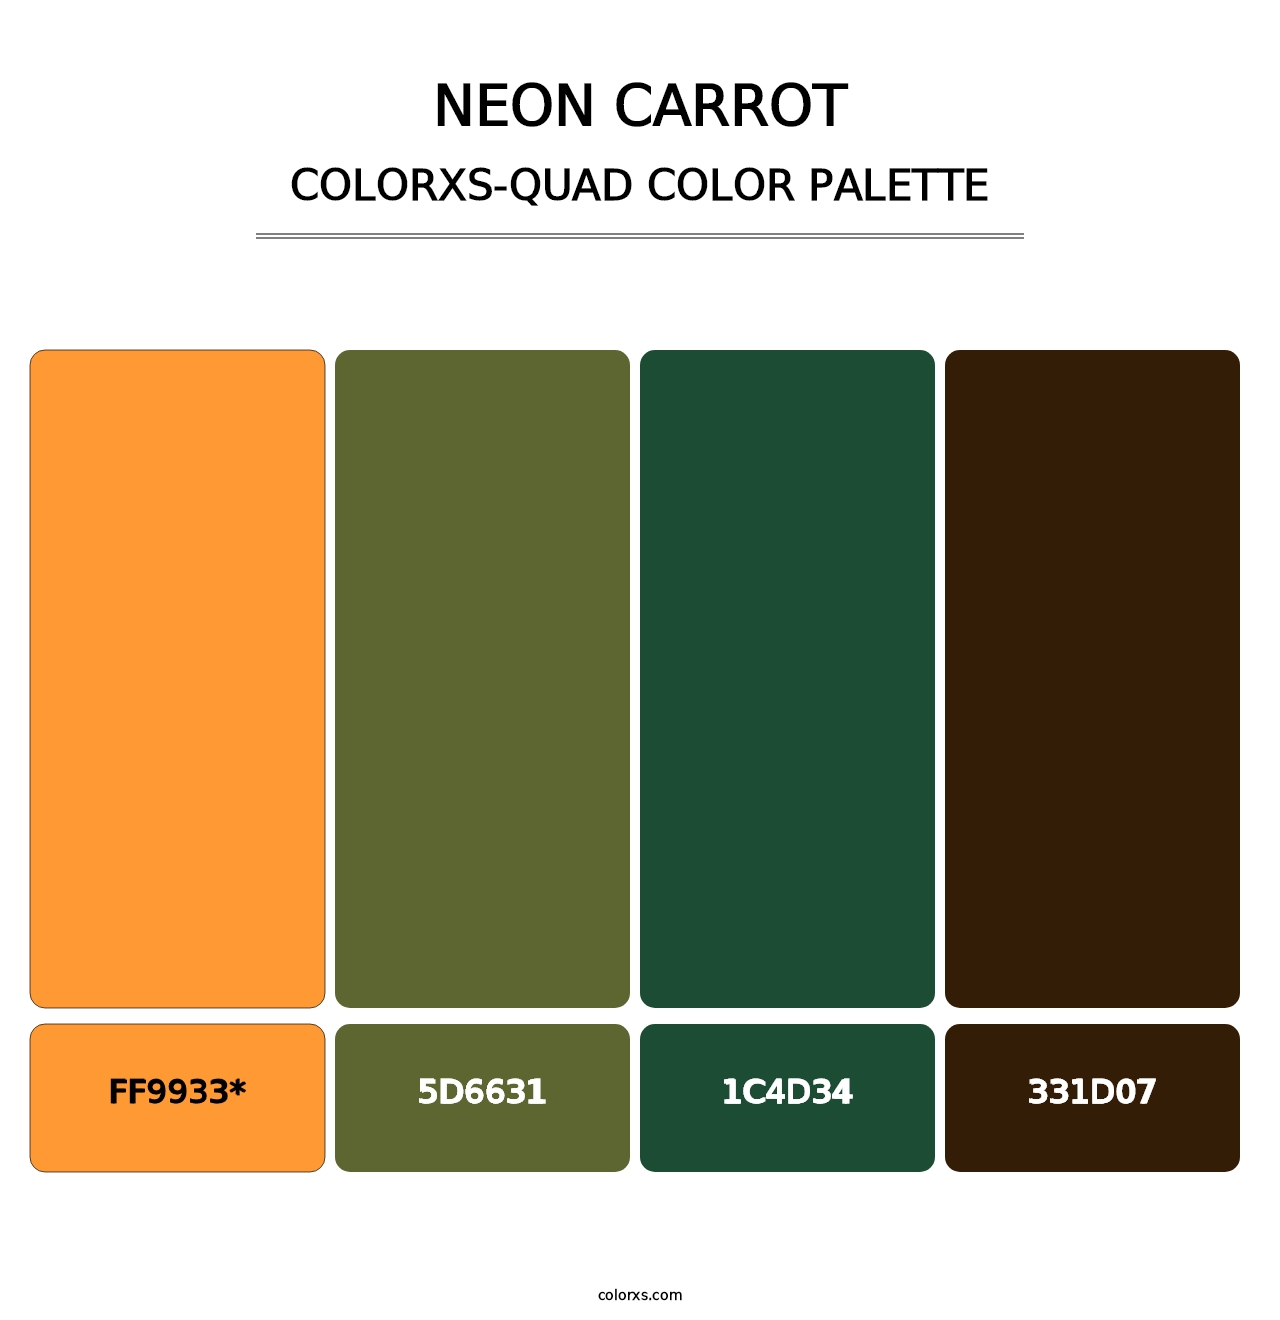 Neon Carrot - Colorxs Quad Palette